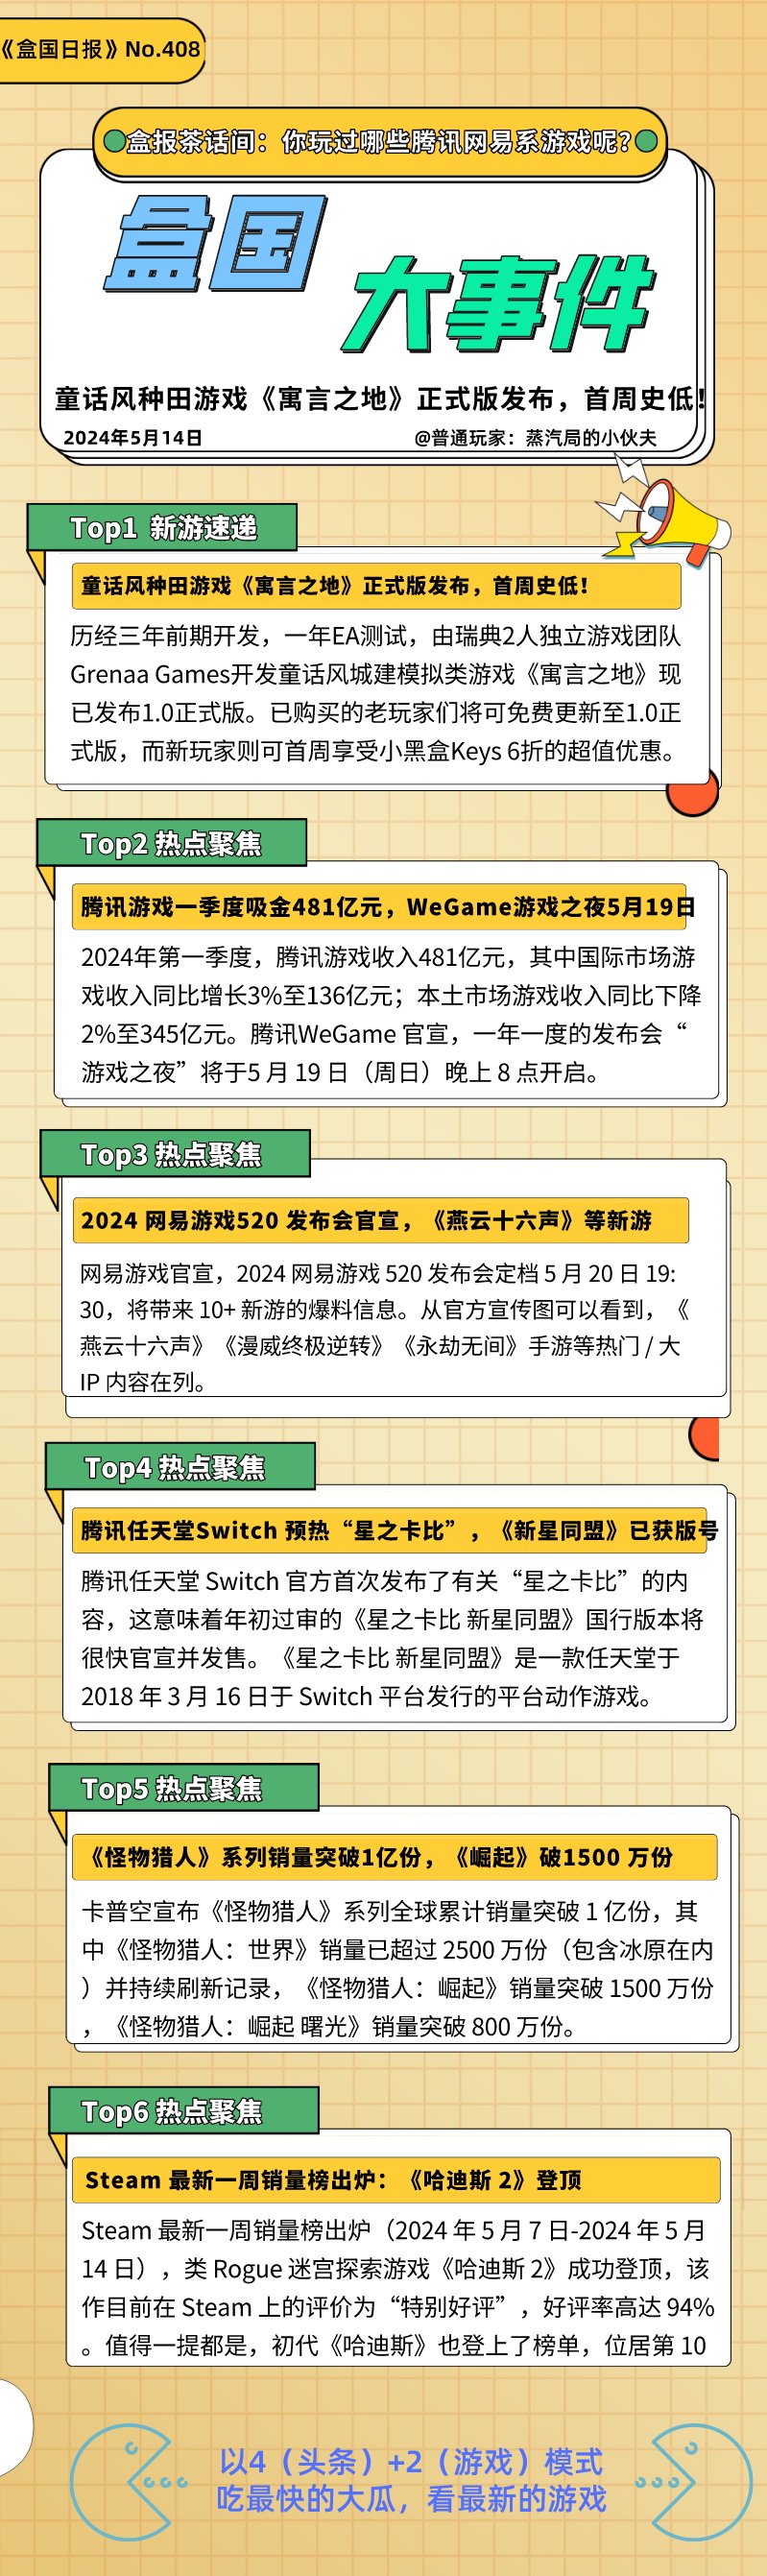 騰訊WeGame遊戲之夜定檔5月19日 VS 網易遊戲發佈會定檔5月20日